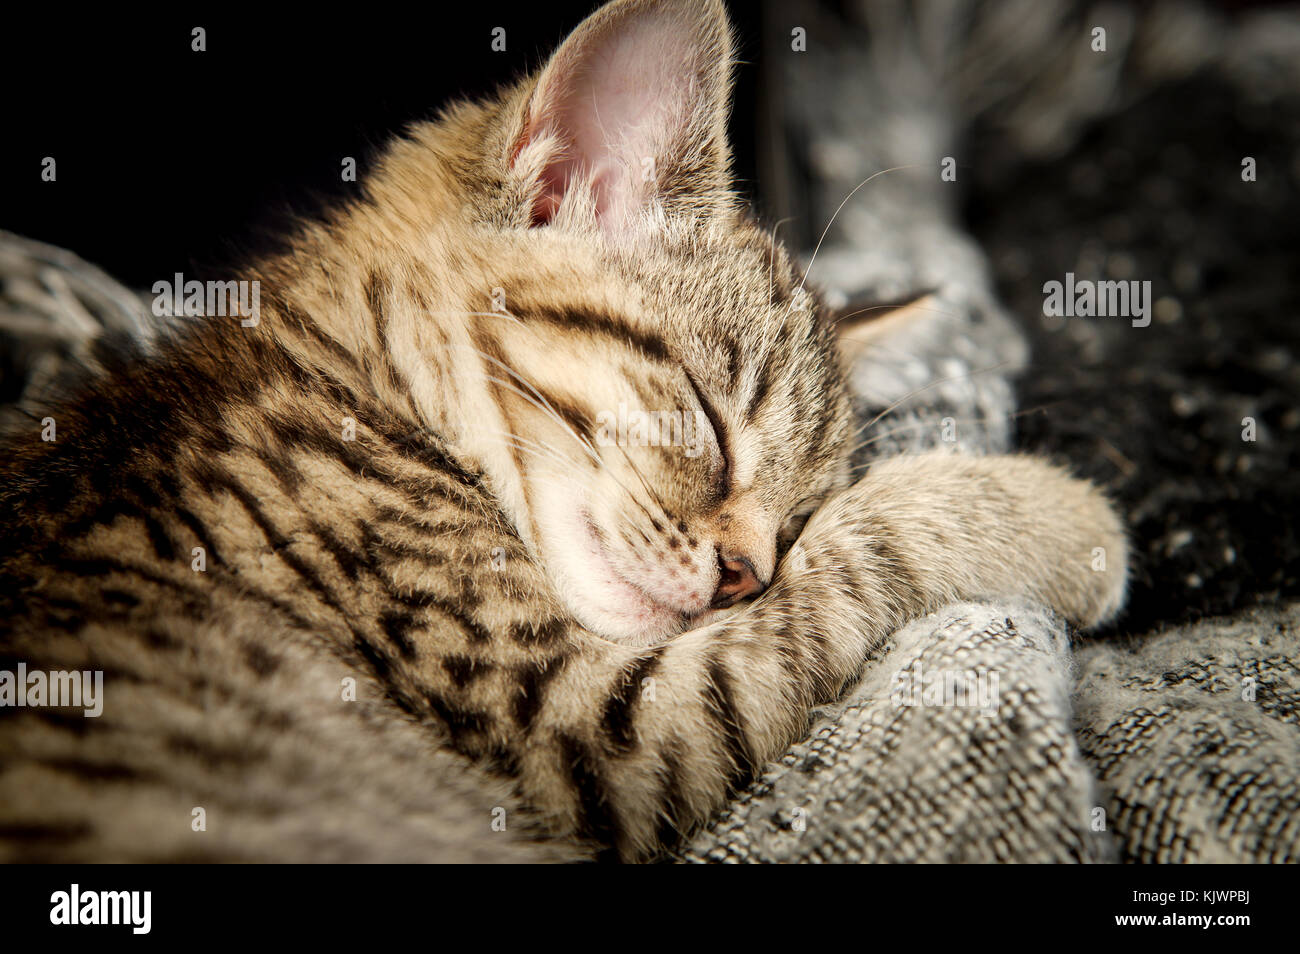 Adorabili tabby rescue gattino addormentato veloce nella sua nuova casa Foto Stock